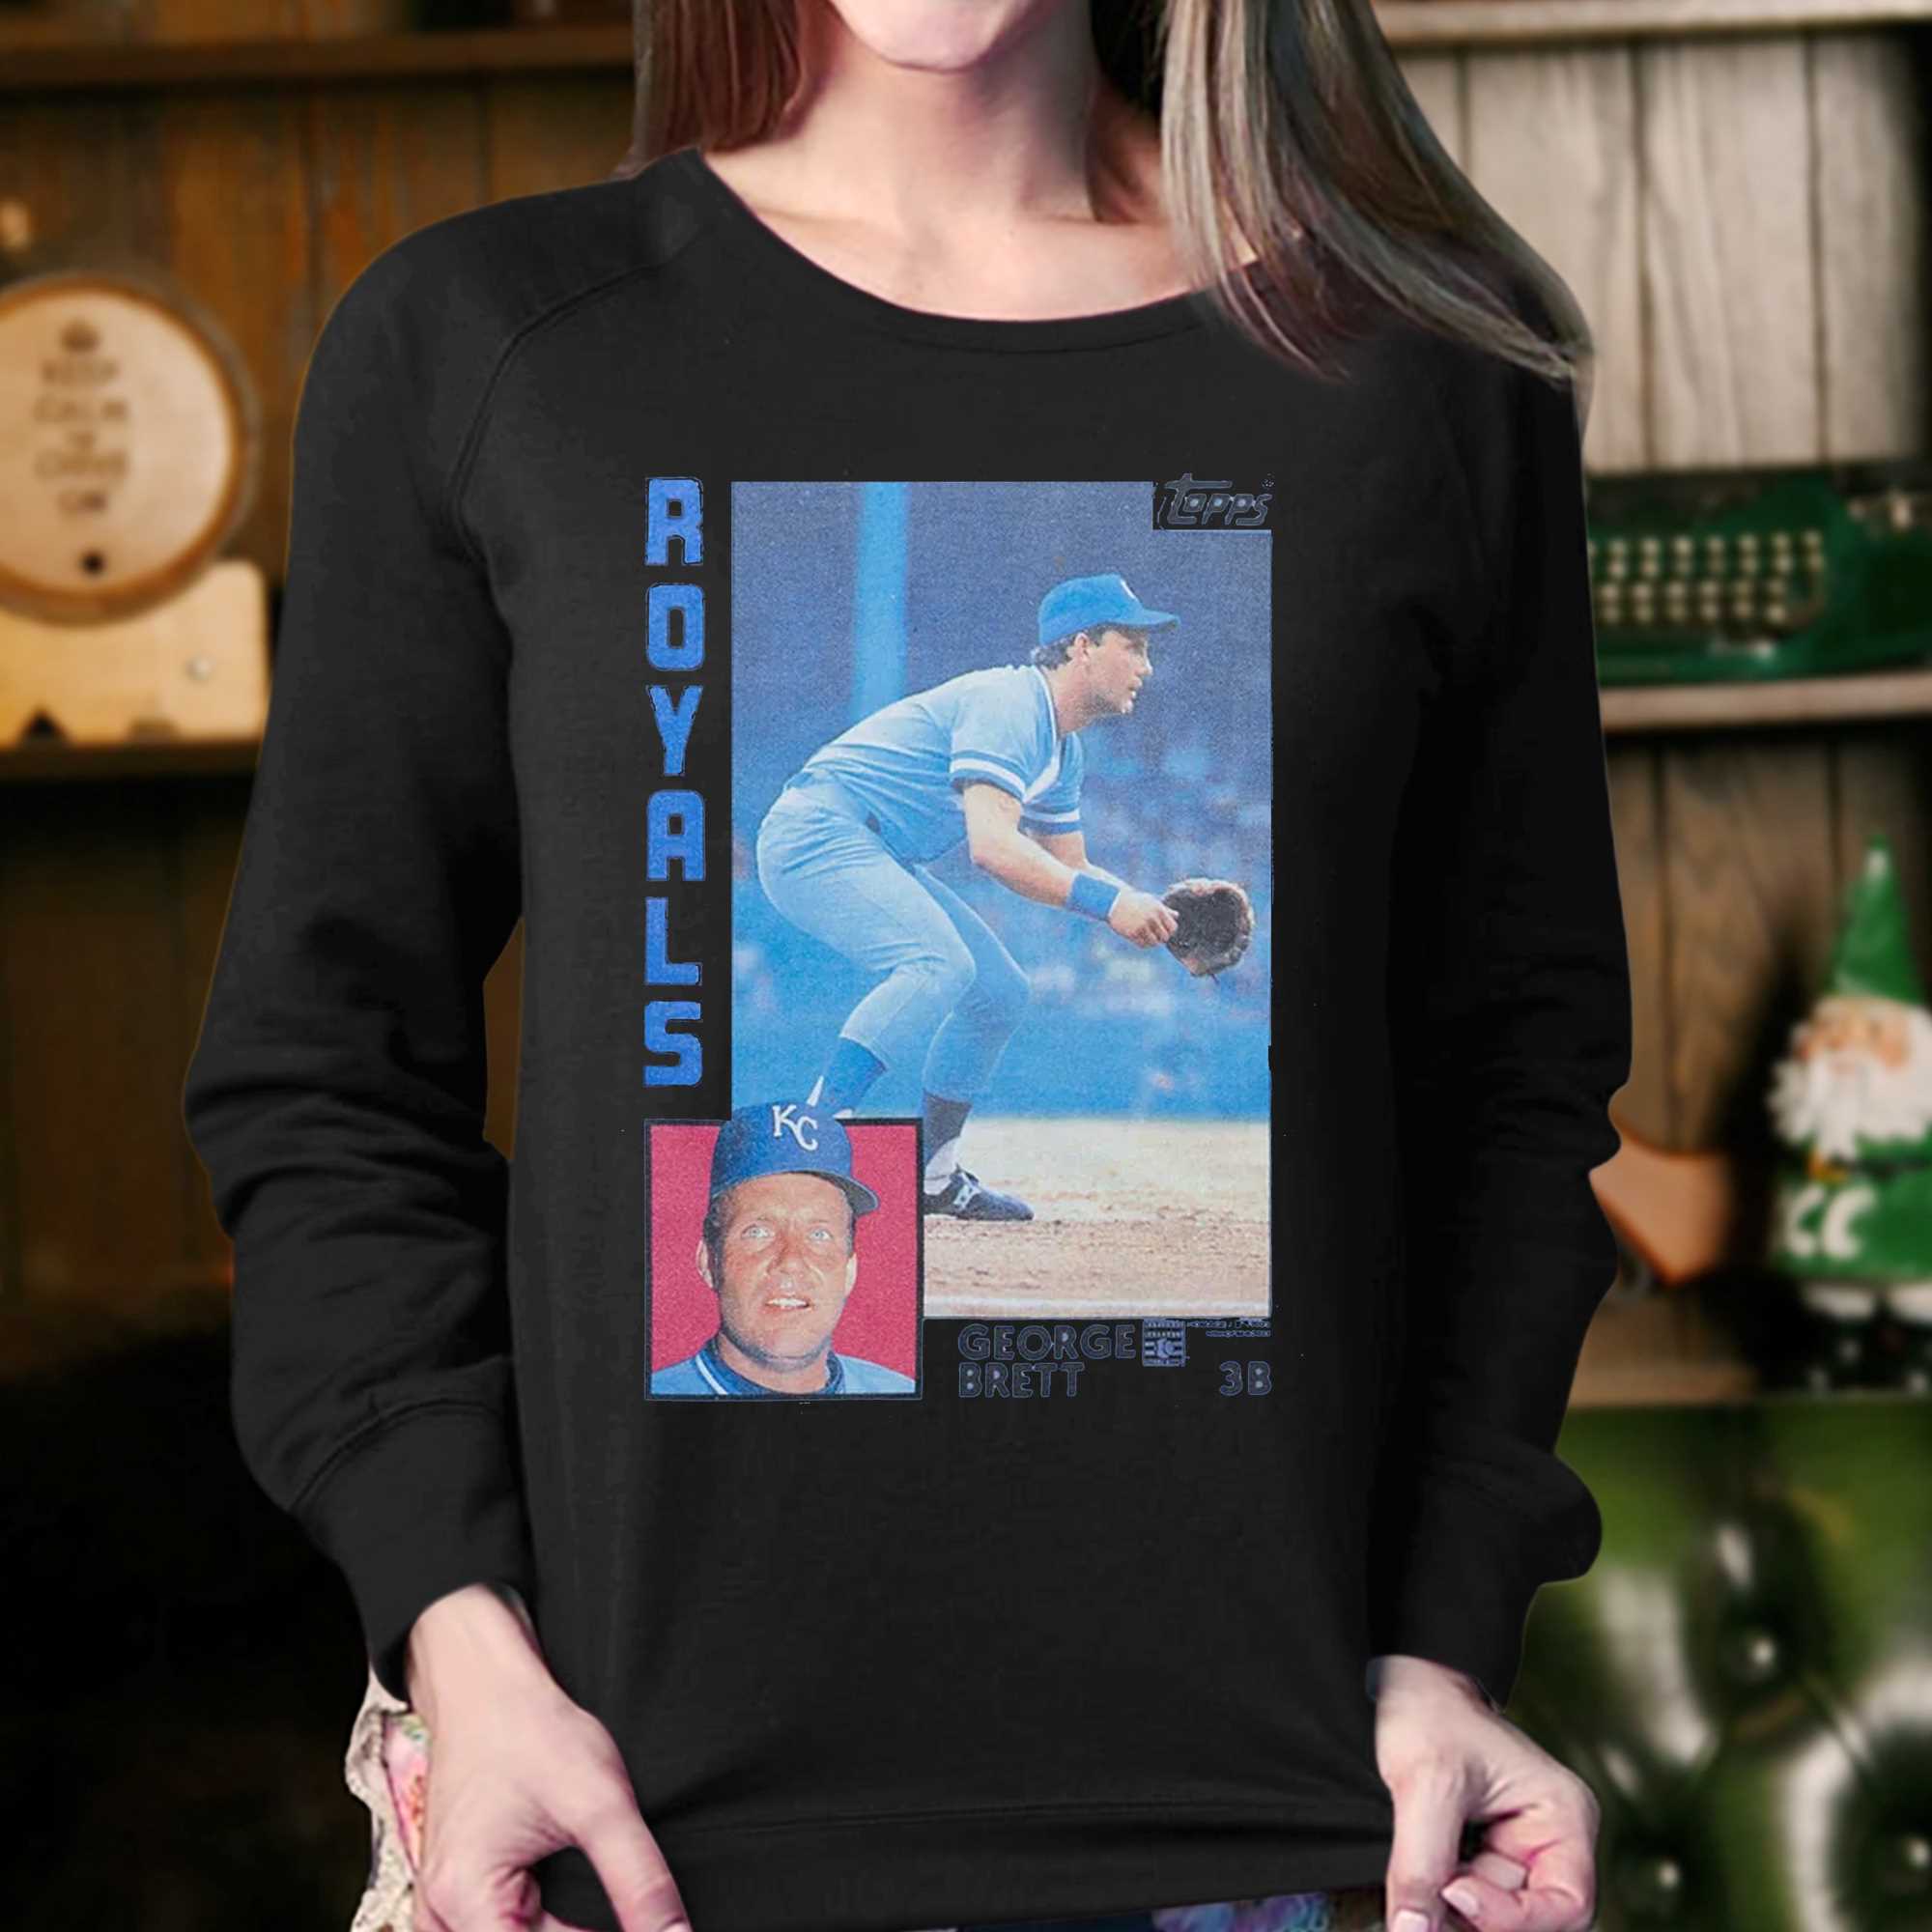 1984 Topps Baseball George Brett Royals Shirt